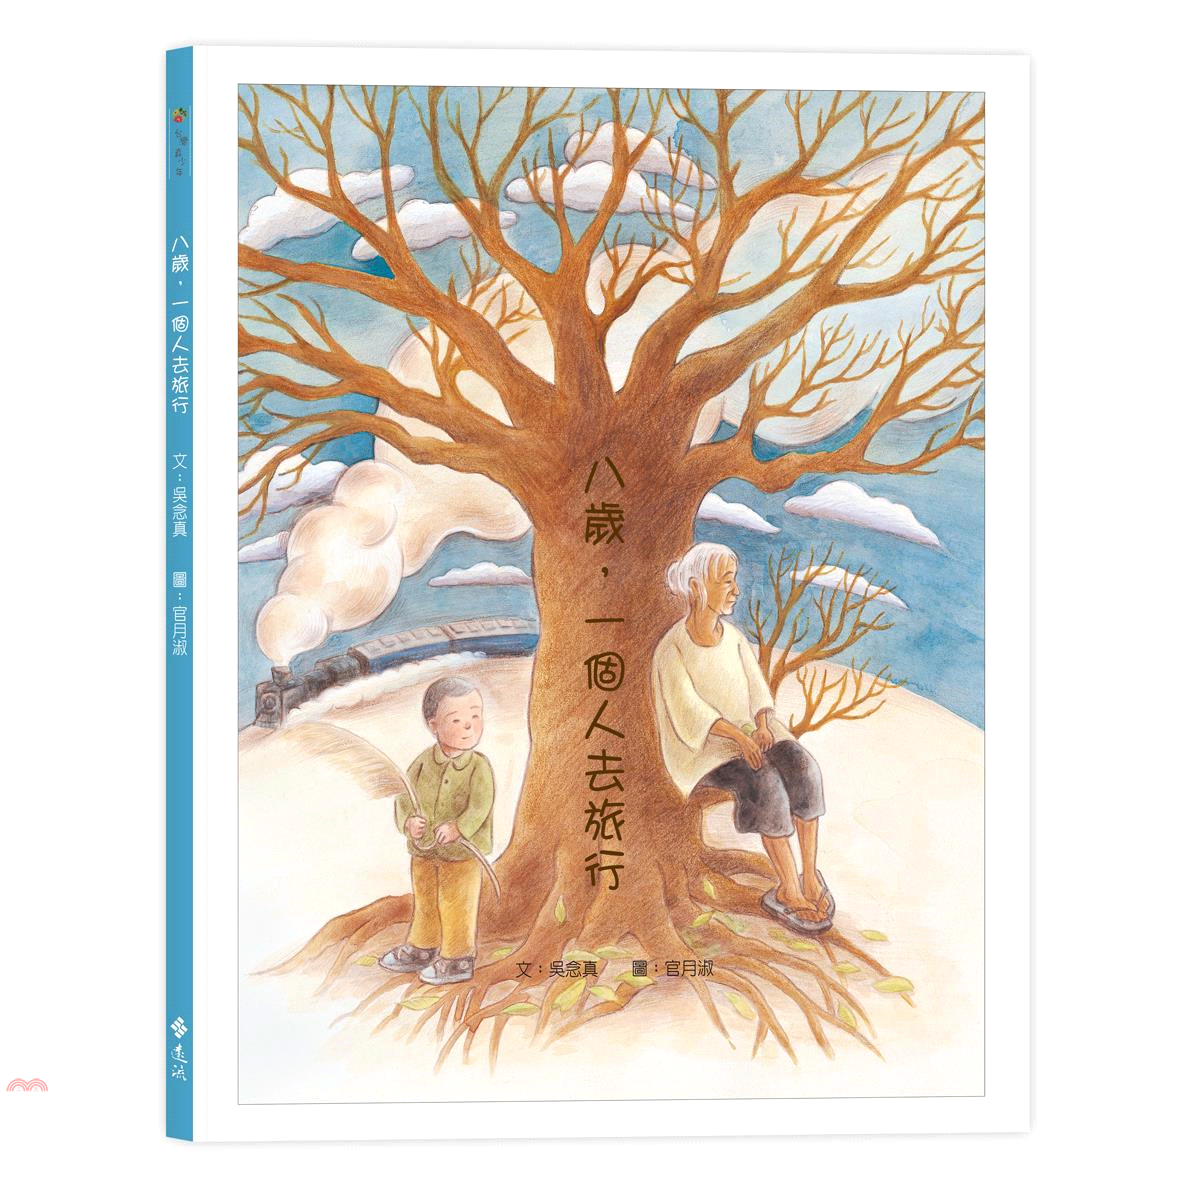 書名：八歲，一個人去旅行系列：台灣真少年定價：300元ISBN13：9789573285281出版社：遠流作者：吳念真-作；官月淑-繪裝訂／頁數：精裝／32版次：2規格：29.4cm*24.2cm (